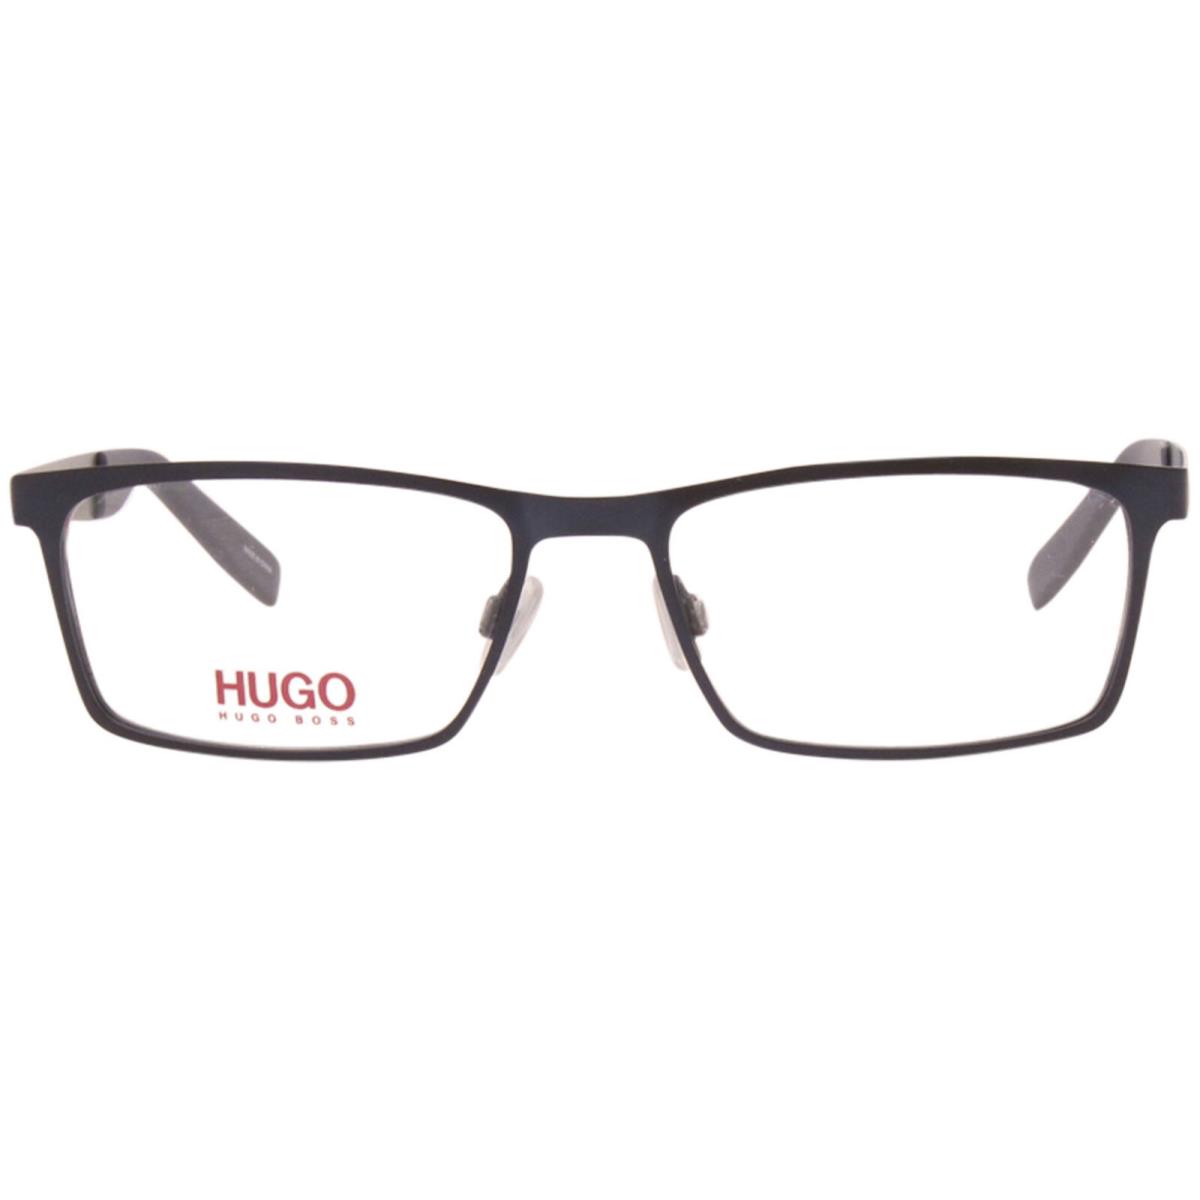 Hugo Boss HG-0228 Fll Eyeglasses Men`s Matte Blue Full Rim Optical Frame 54mm - Frame: Blue